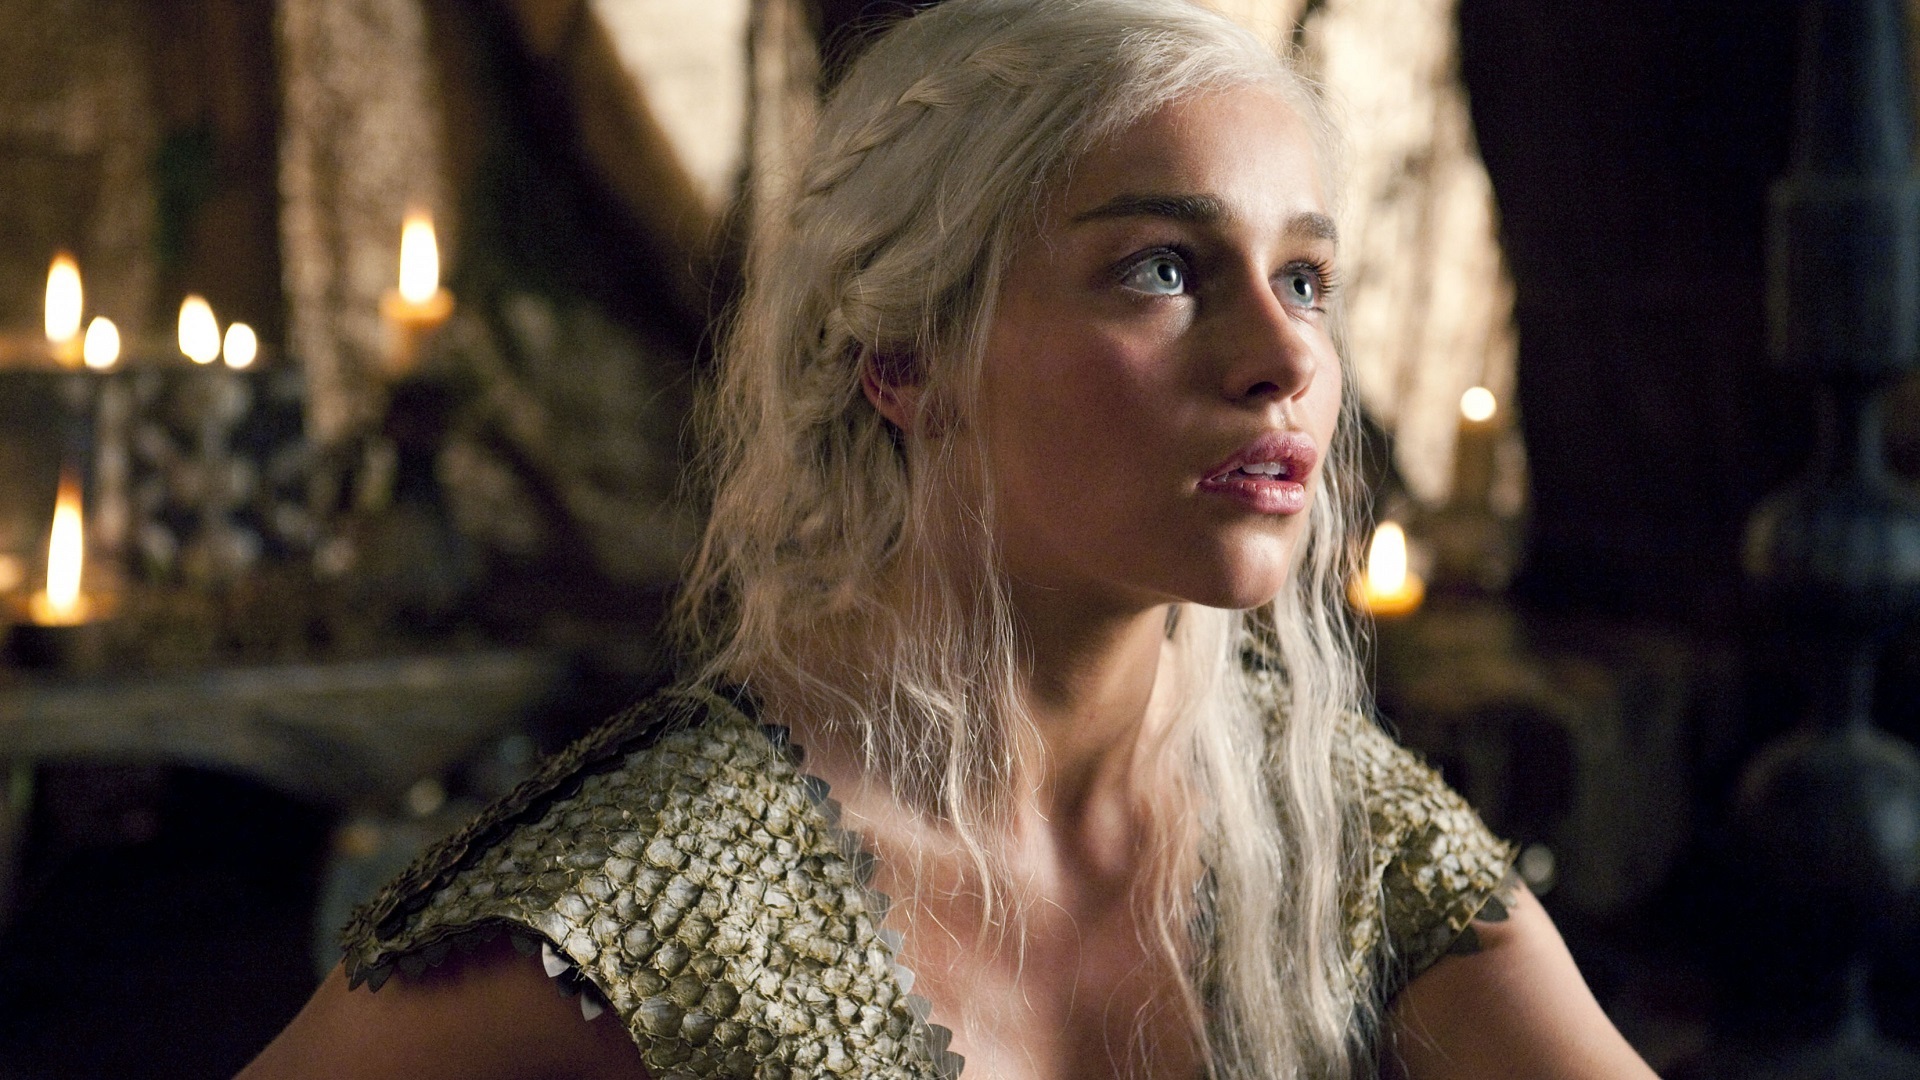 People 1920x1080 Emilia Clarke Daenerys Targaryen women blonde silver hair blue eyes long hair face Game of Thrones actress shocked